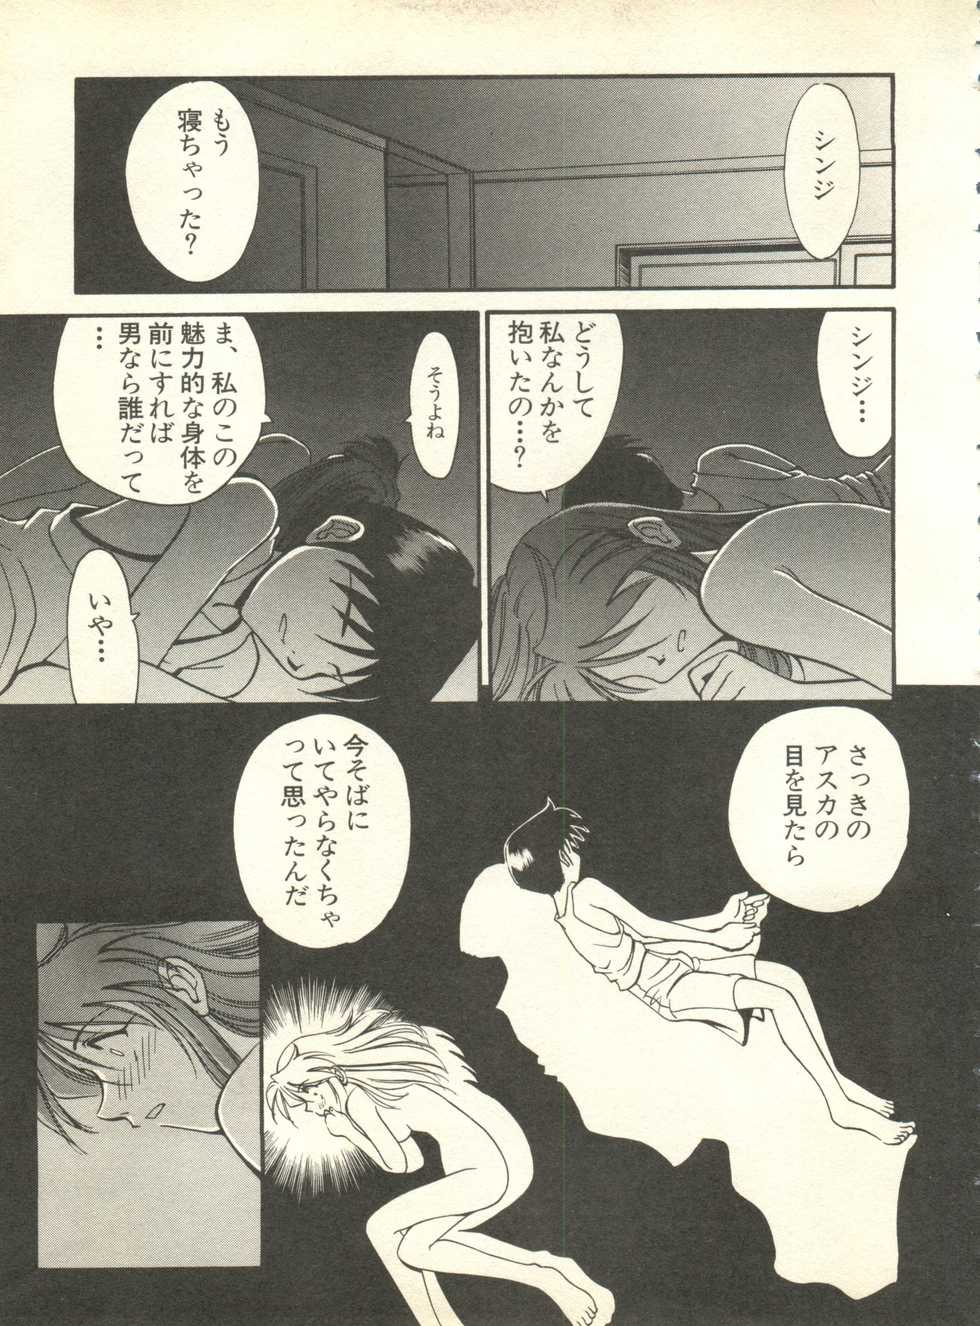 [Anthology] Shitsurakuen 4 - Paradise Lost 4 (Neon Genesis Evangelion) - Page 34